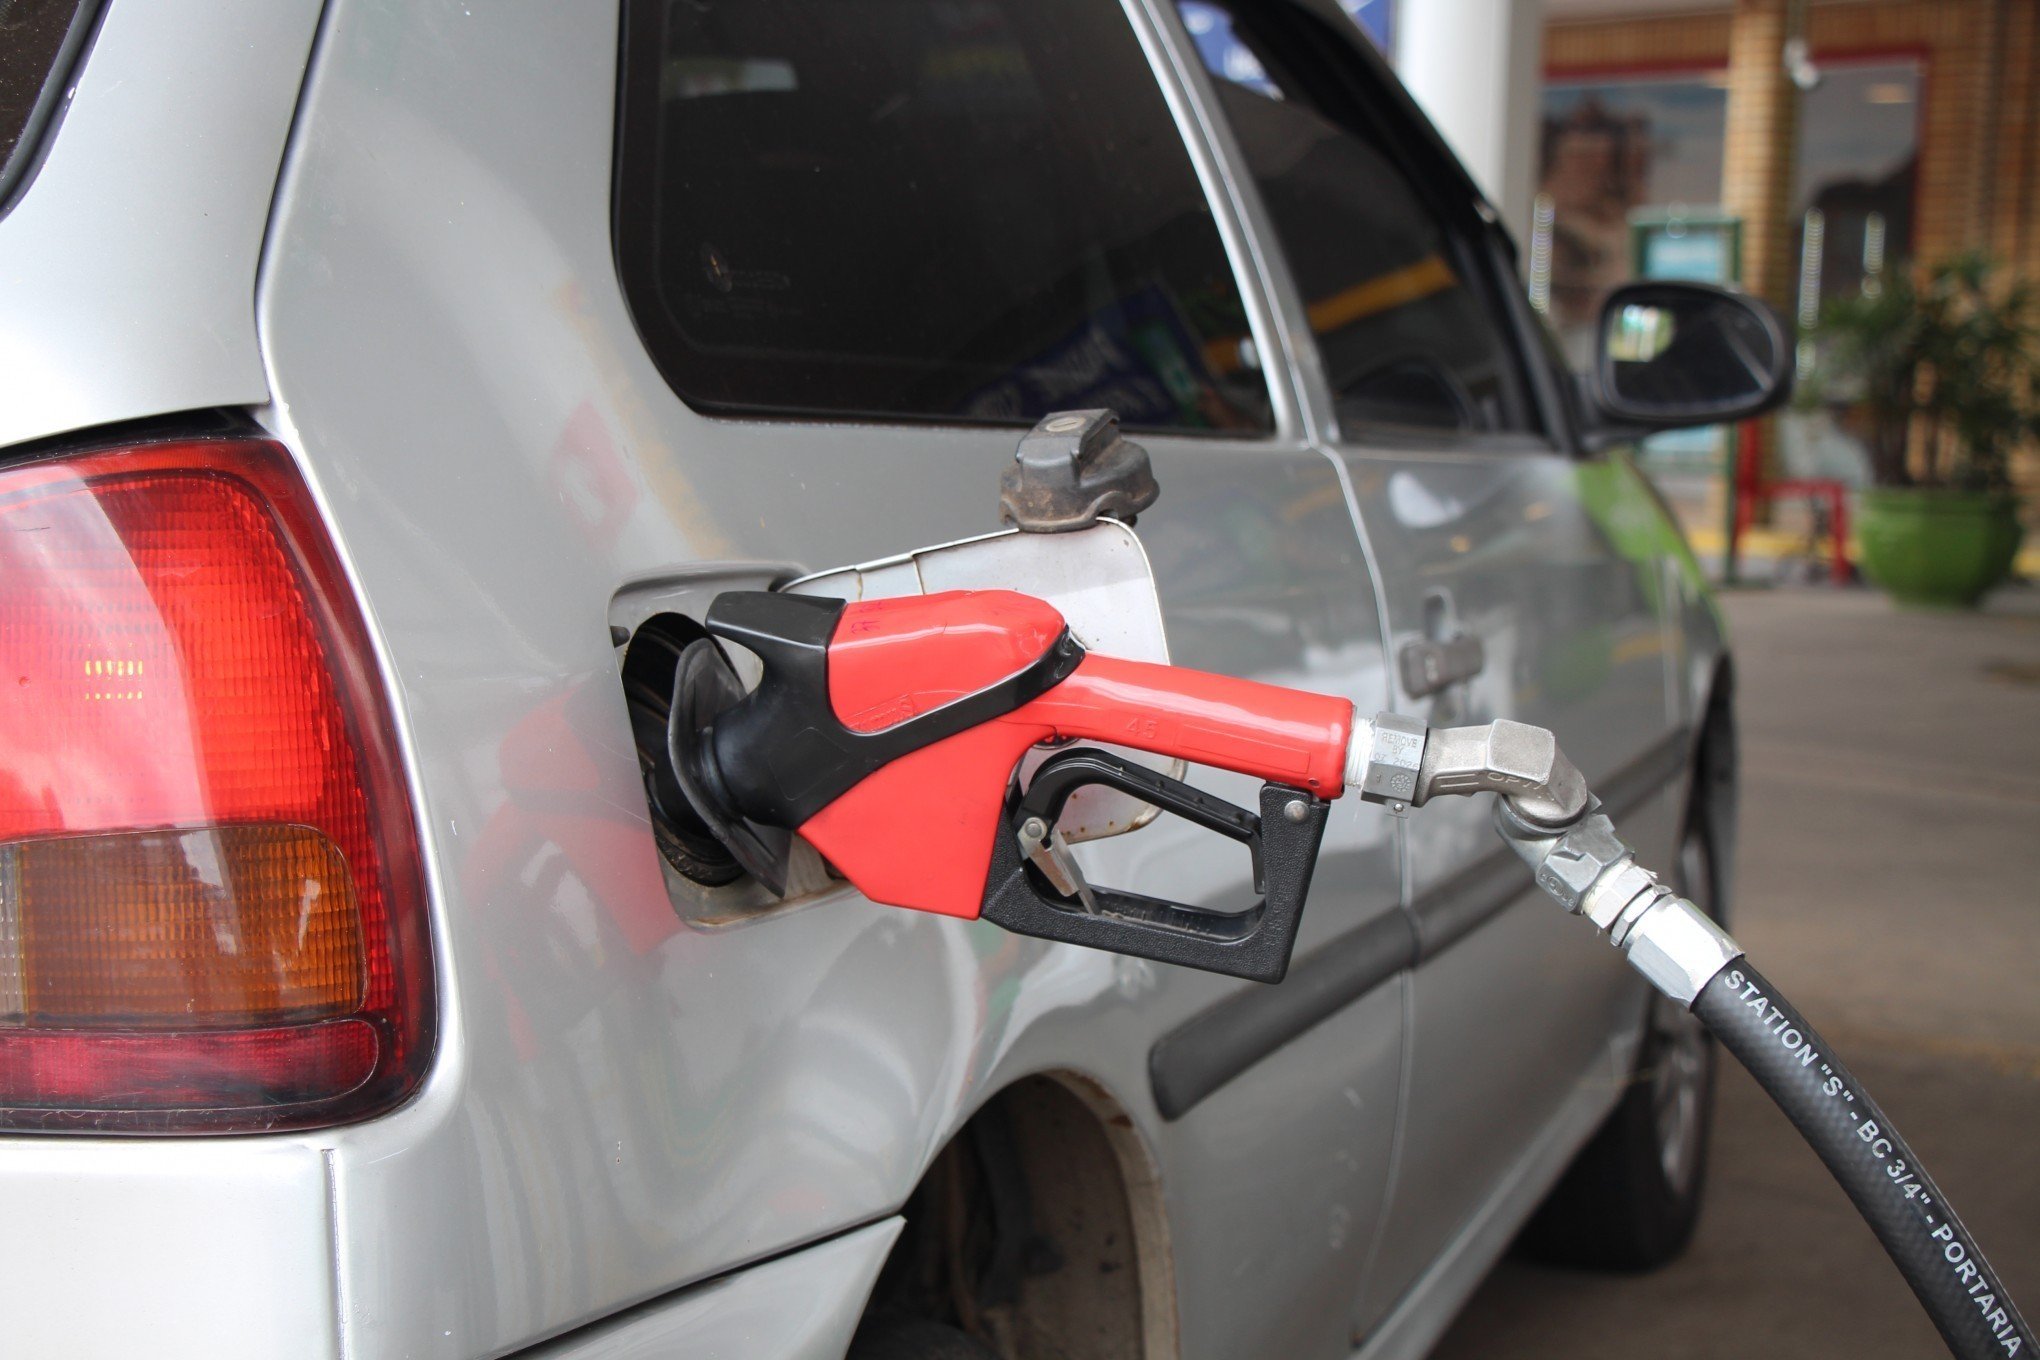 ALTA NA BOMBA: Governo abre canal de denúncias para preço abusivo nos postos de combustíveis